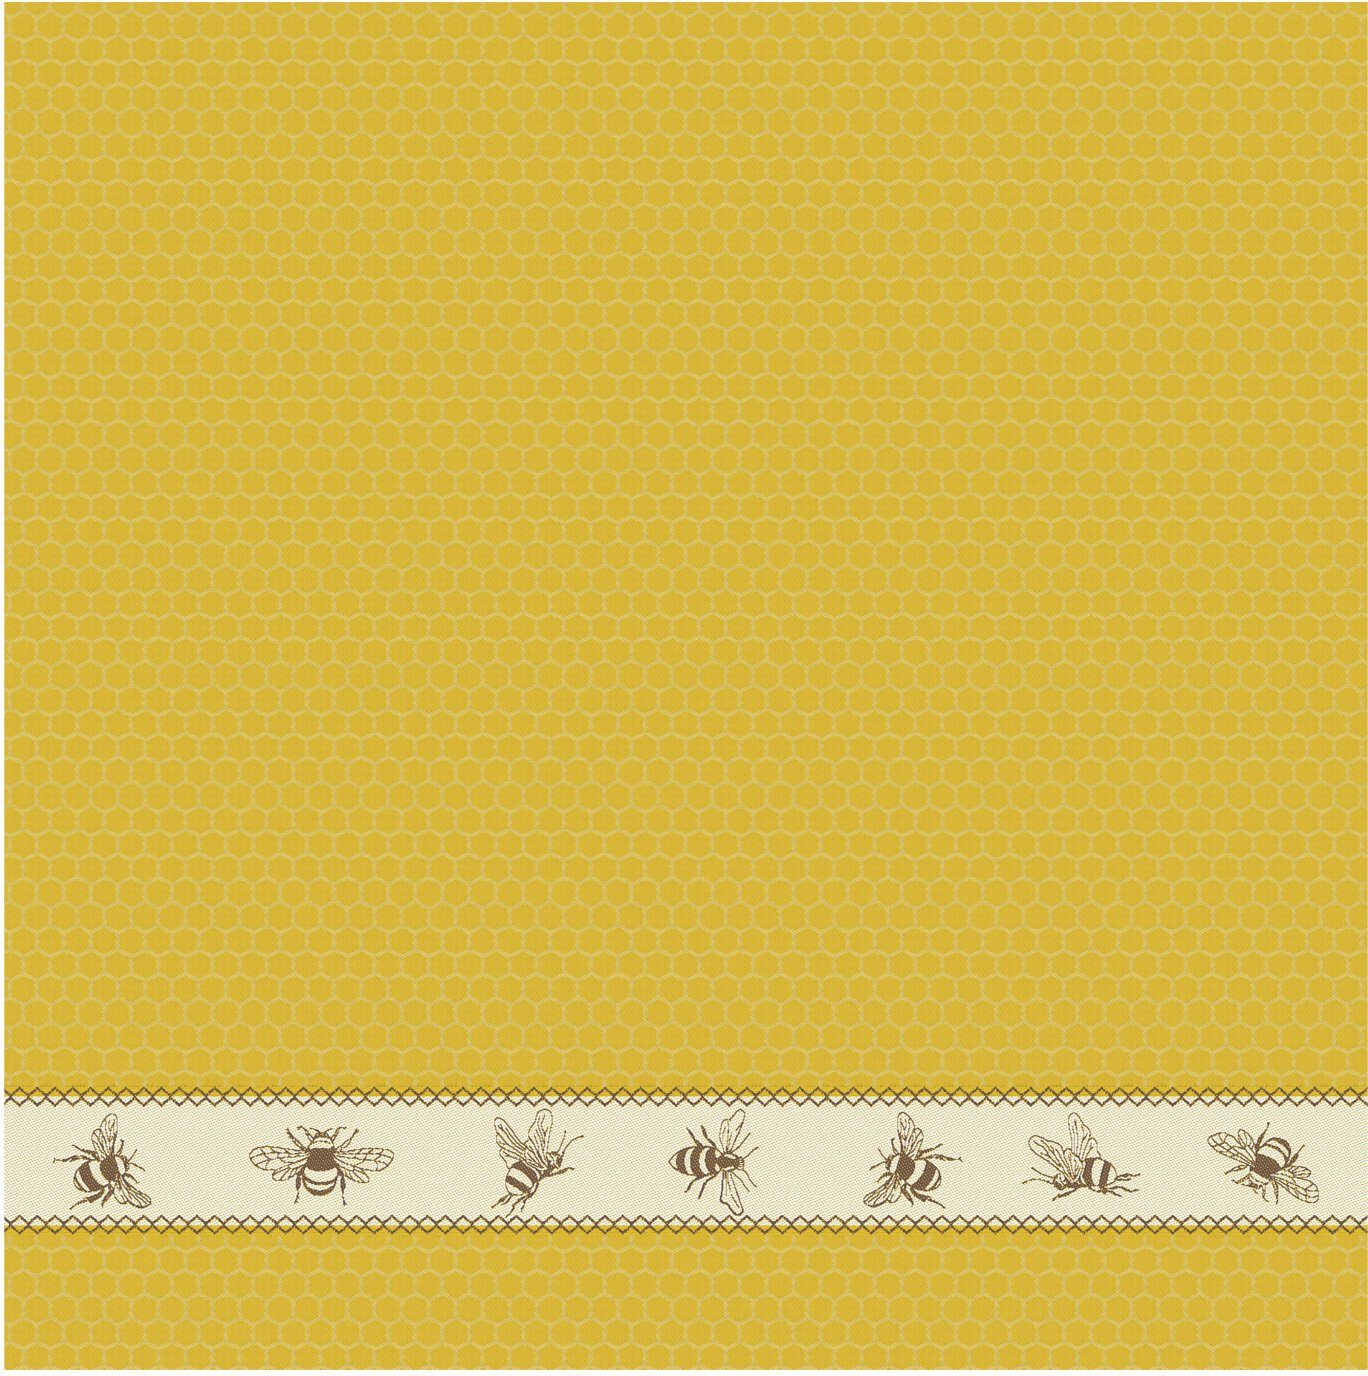 aus + DDDDD Bees, 2x Küchentuch Geschirrtuch Combi-Set: 4-tlg., gelb/naturweiß/braun bestehend Geschirrtuch) 2x (Set,